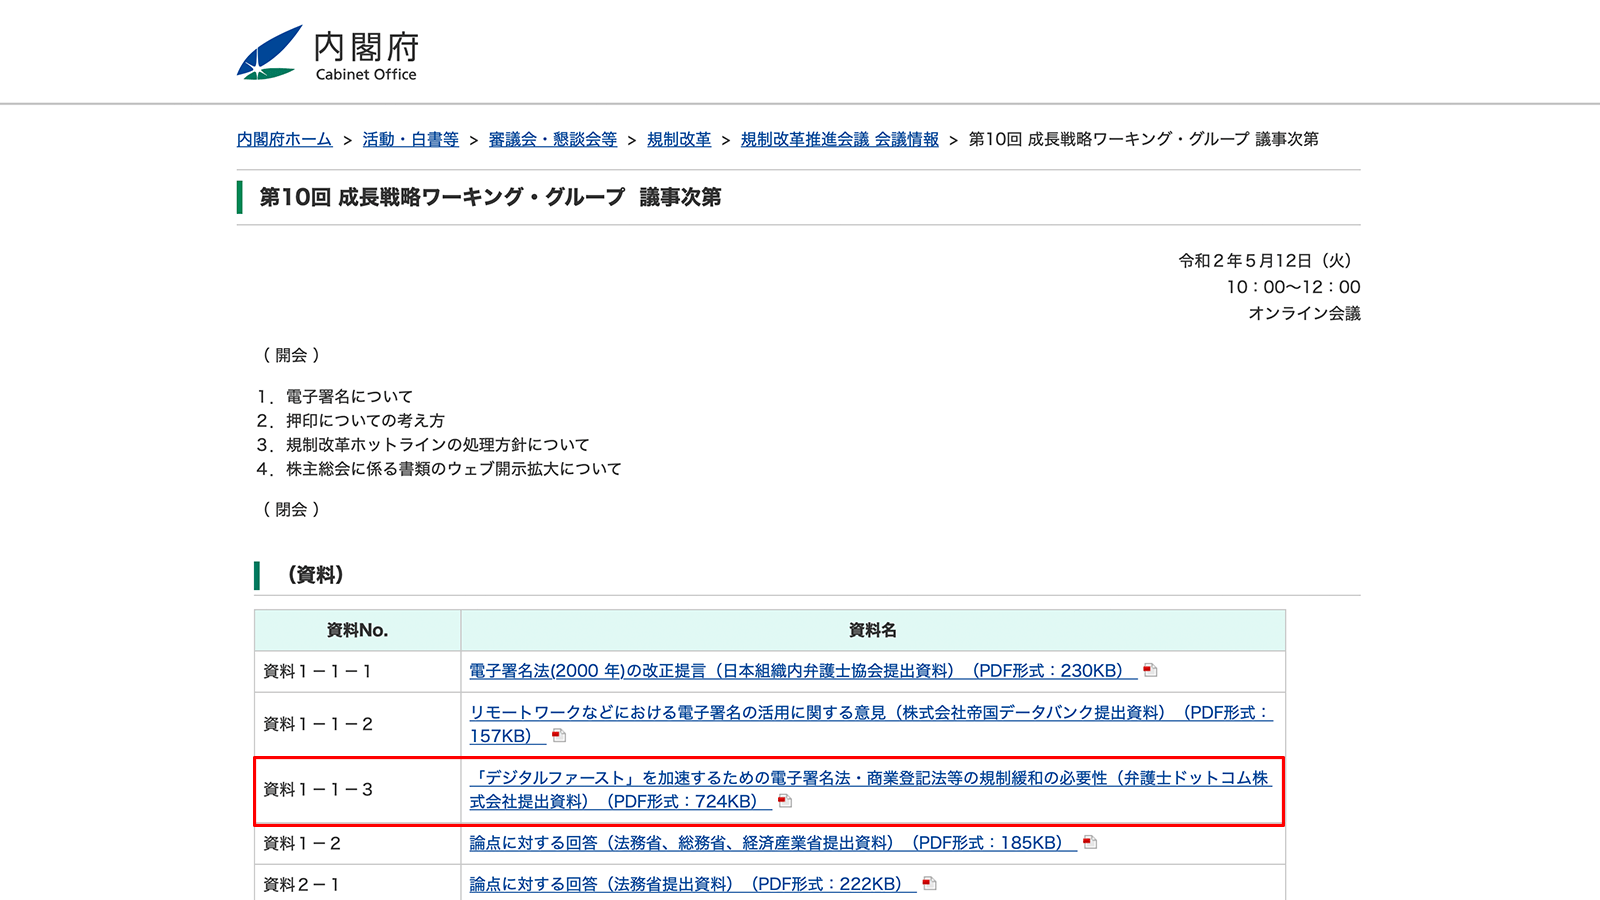 https://www8.cao.go.jp/kisei-kaikaku/kisei/meeting/wg/seicho/20200512/agenda.html 2020年5月18日